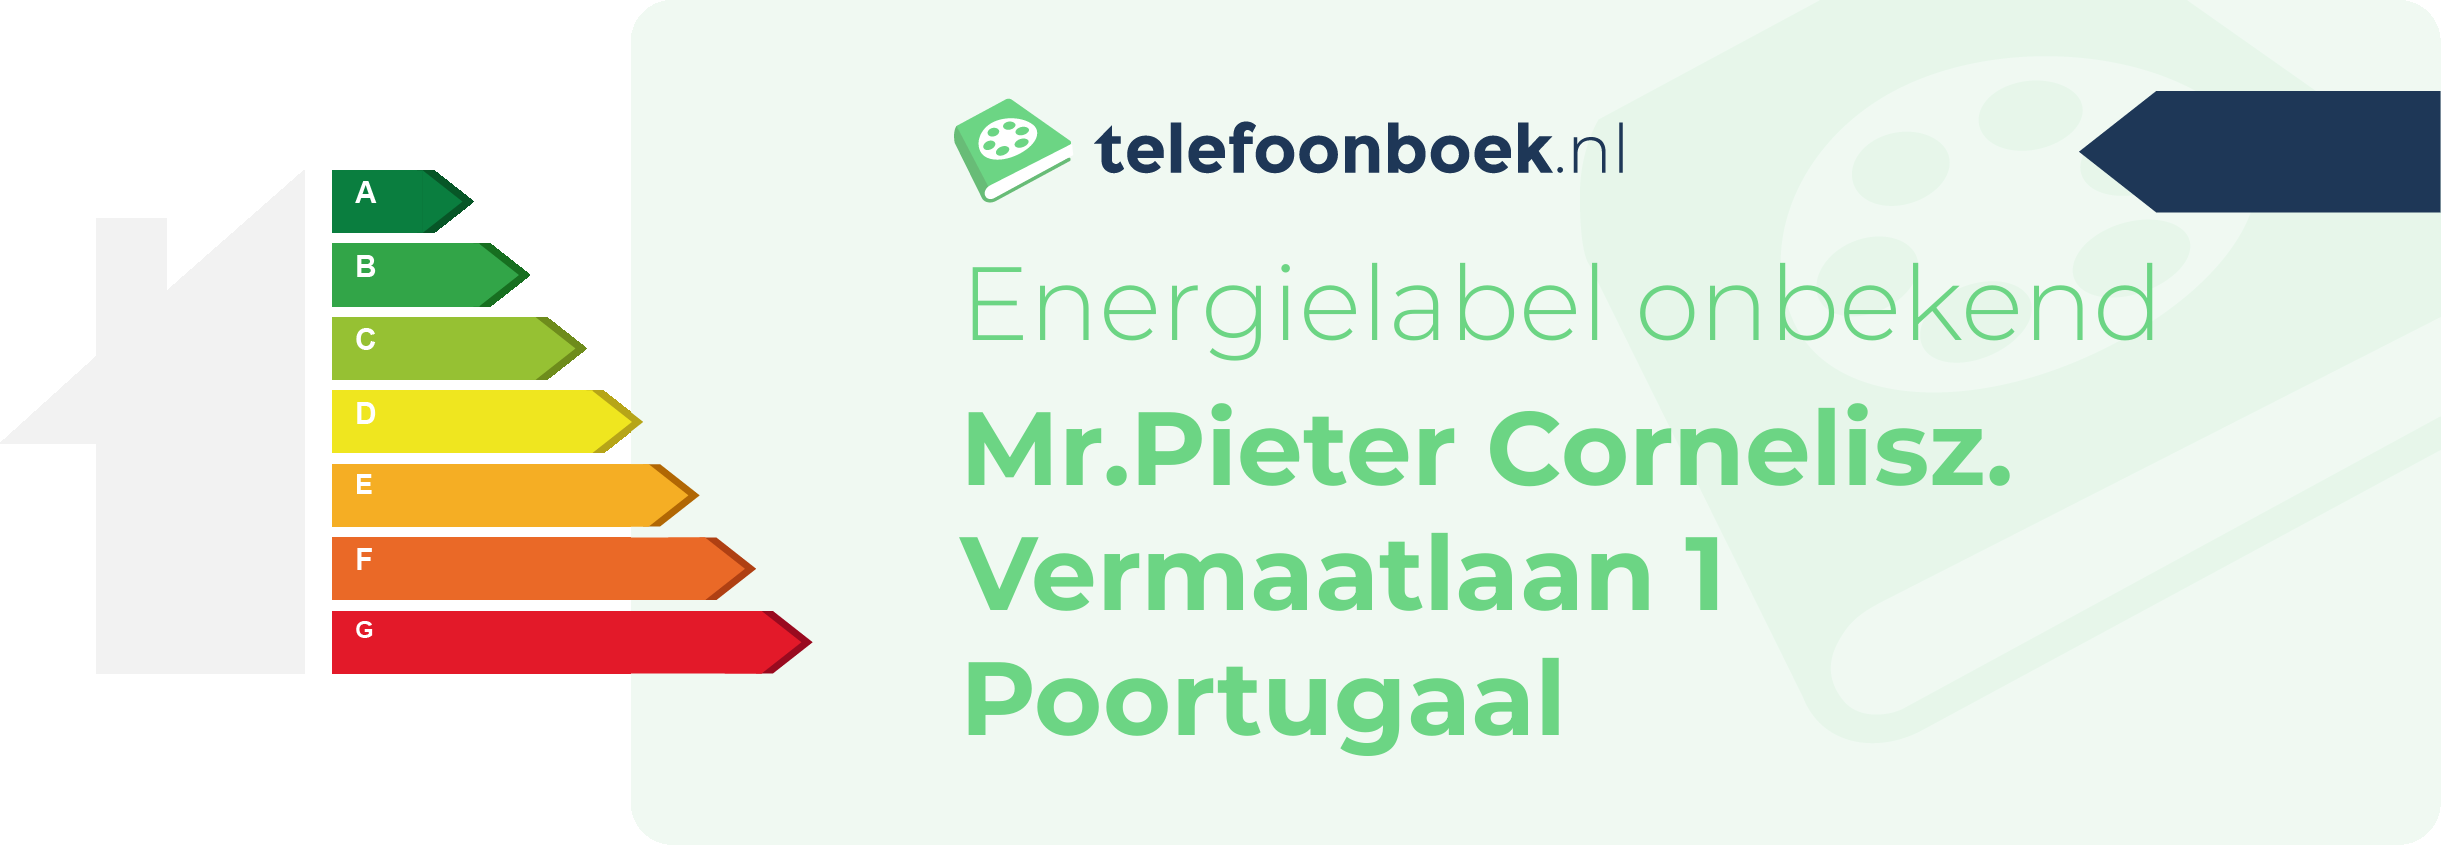 Energielabel Mr.Pieter Cornelisz. Vermaatlaan 1 Poortugaal